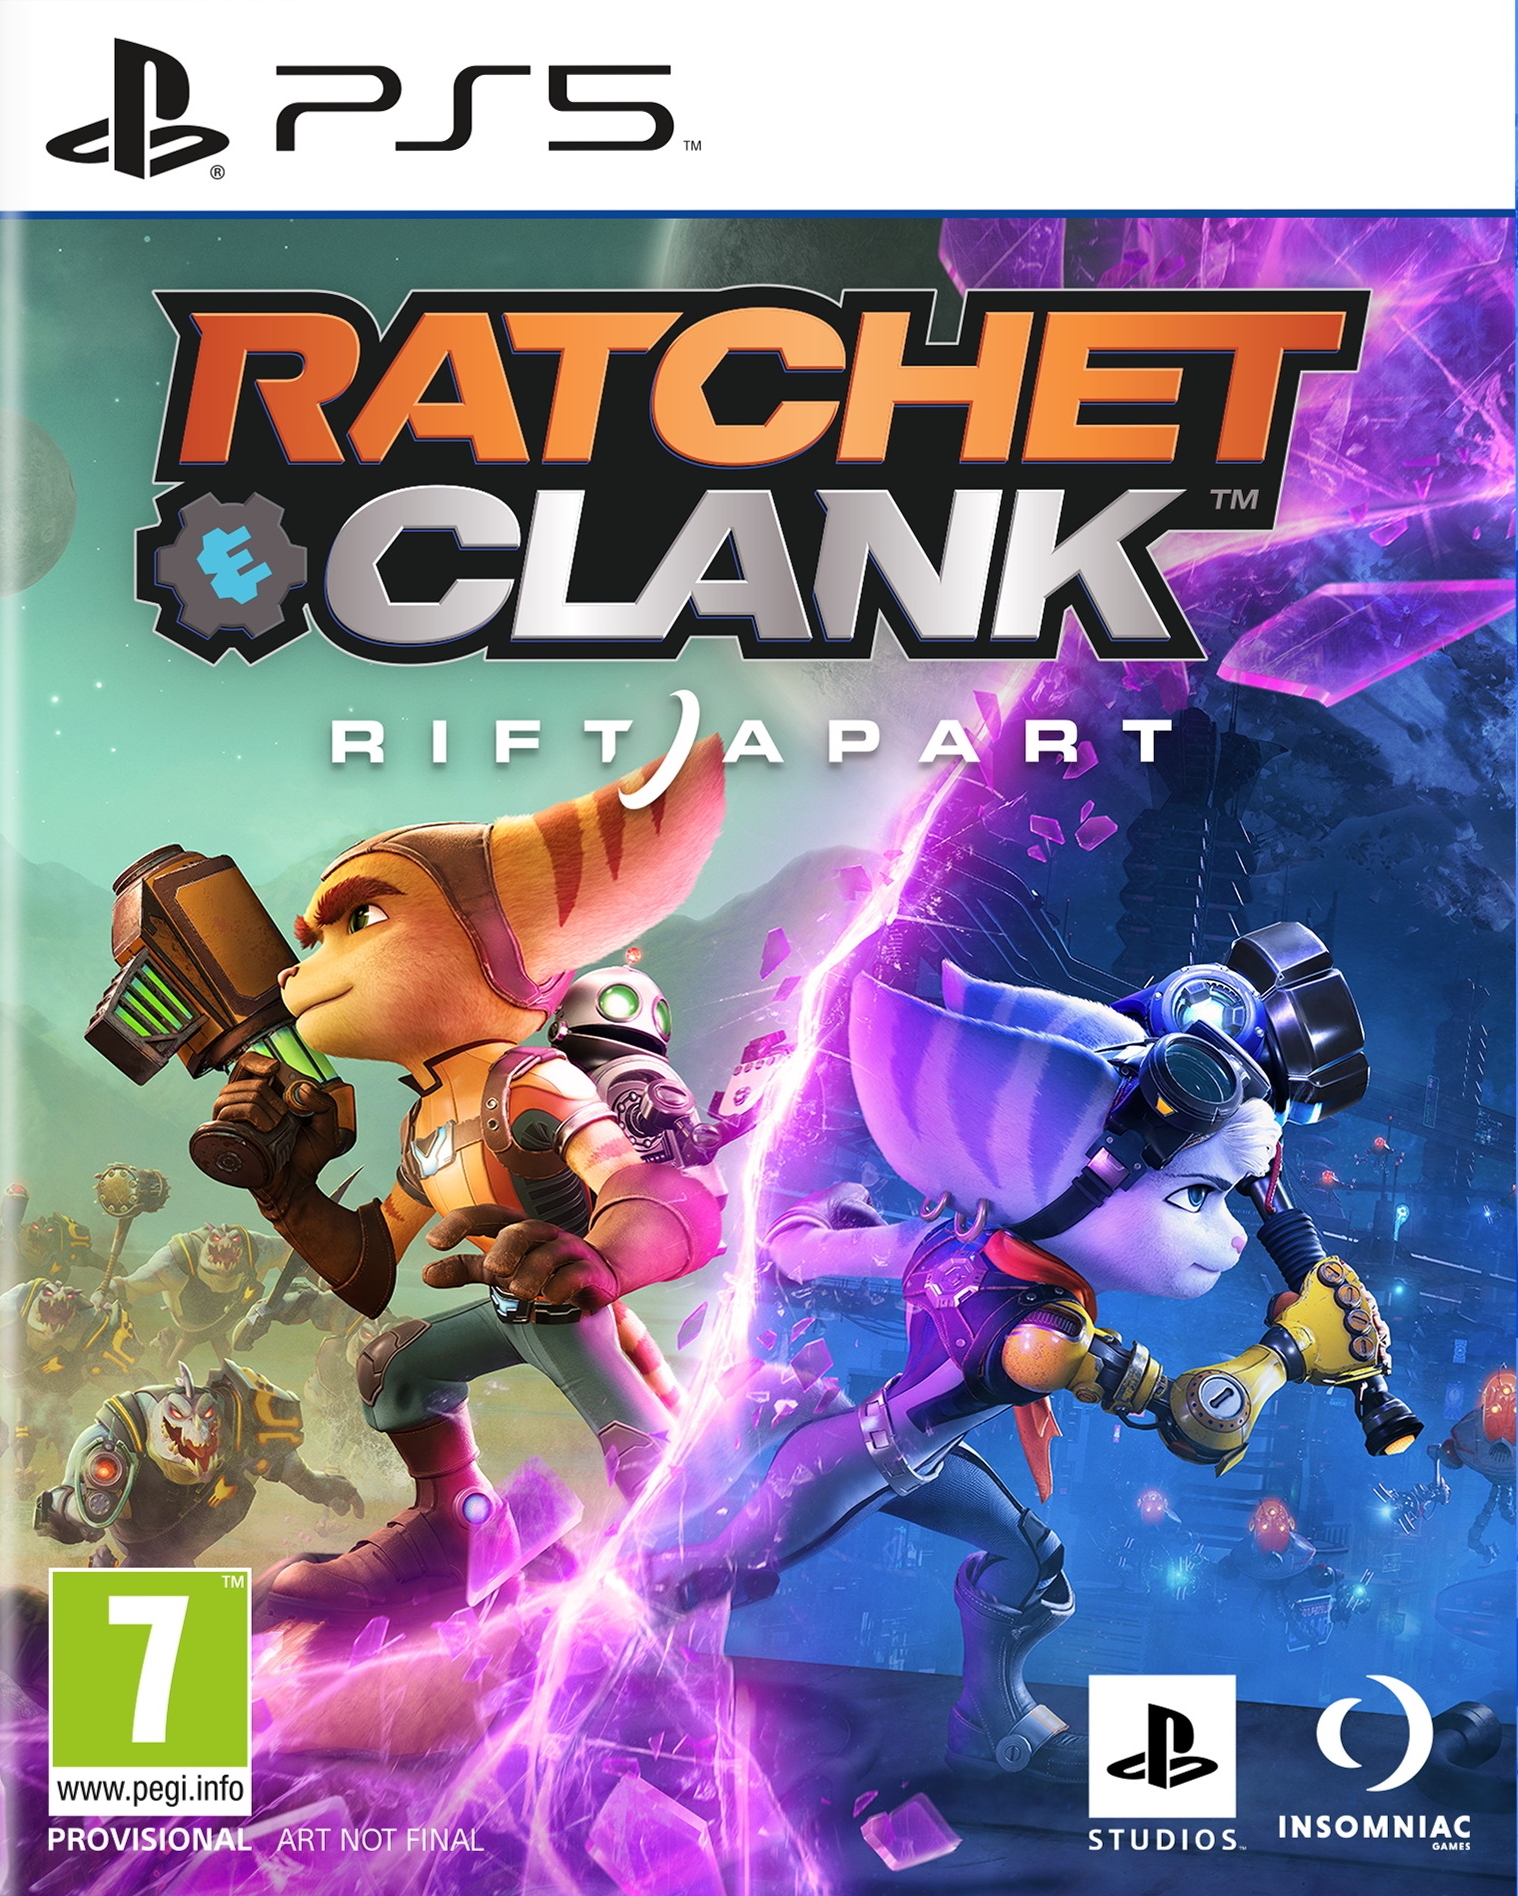 jaquette reduite de Ratchet & Clank: Rift Apart sur Playstation 5